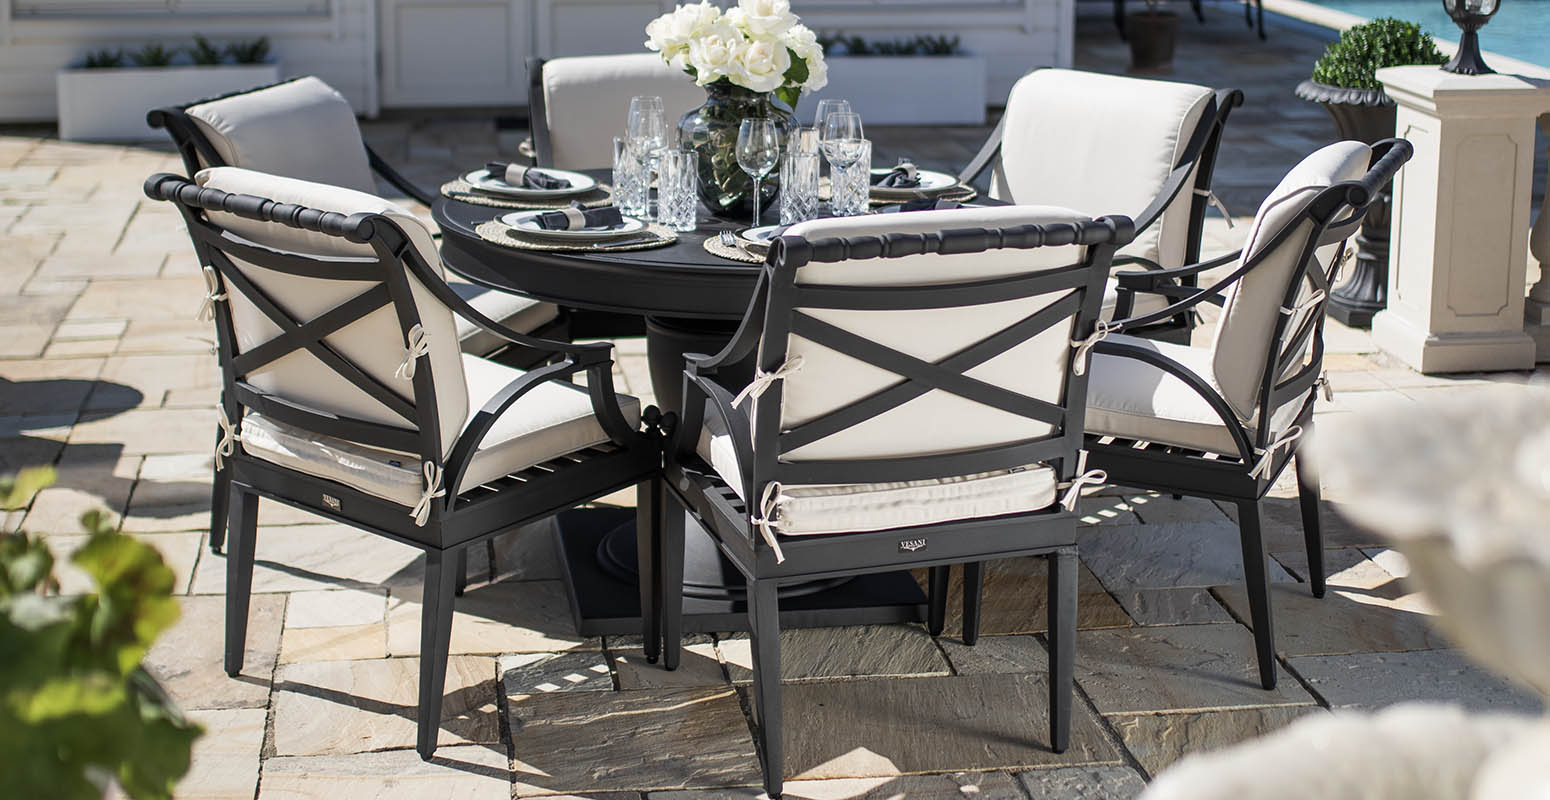 Matgrupp utomhus runt bord 6 stolar svart gjuten aluminium - Amalfi